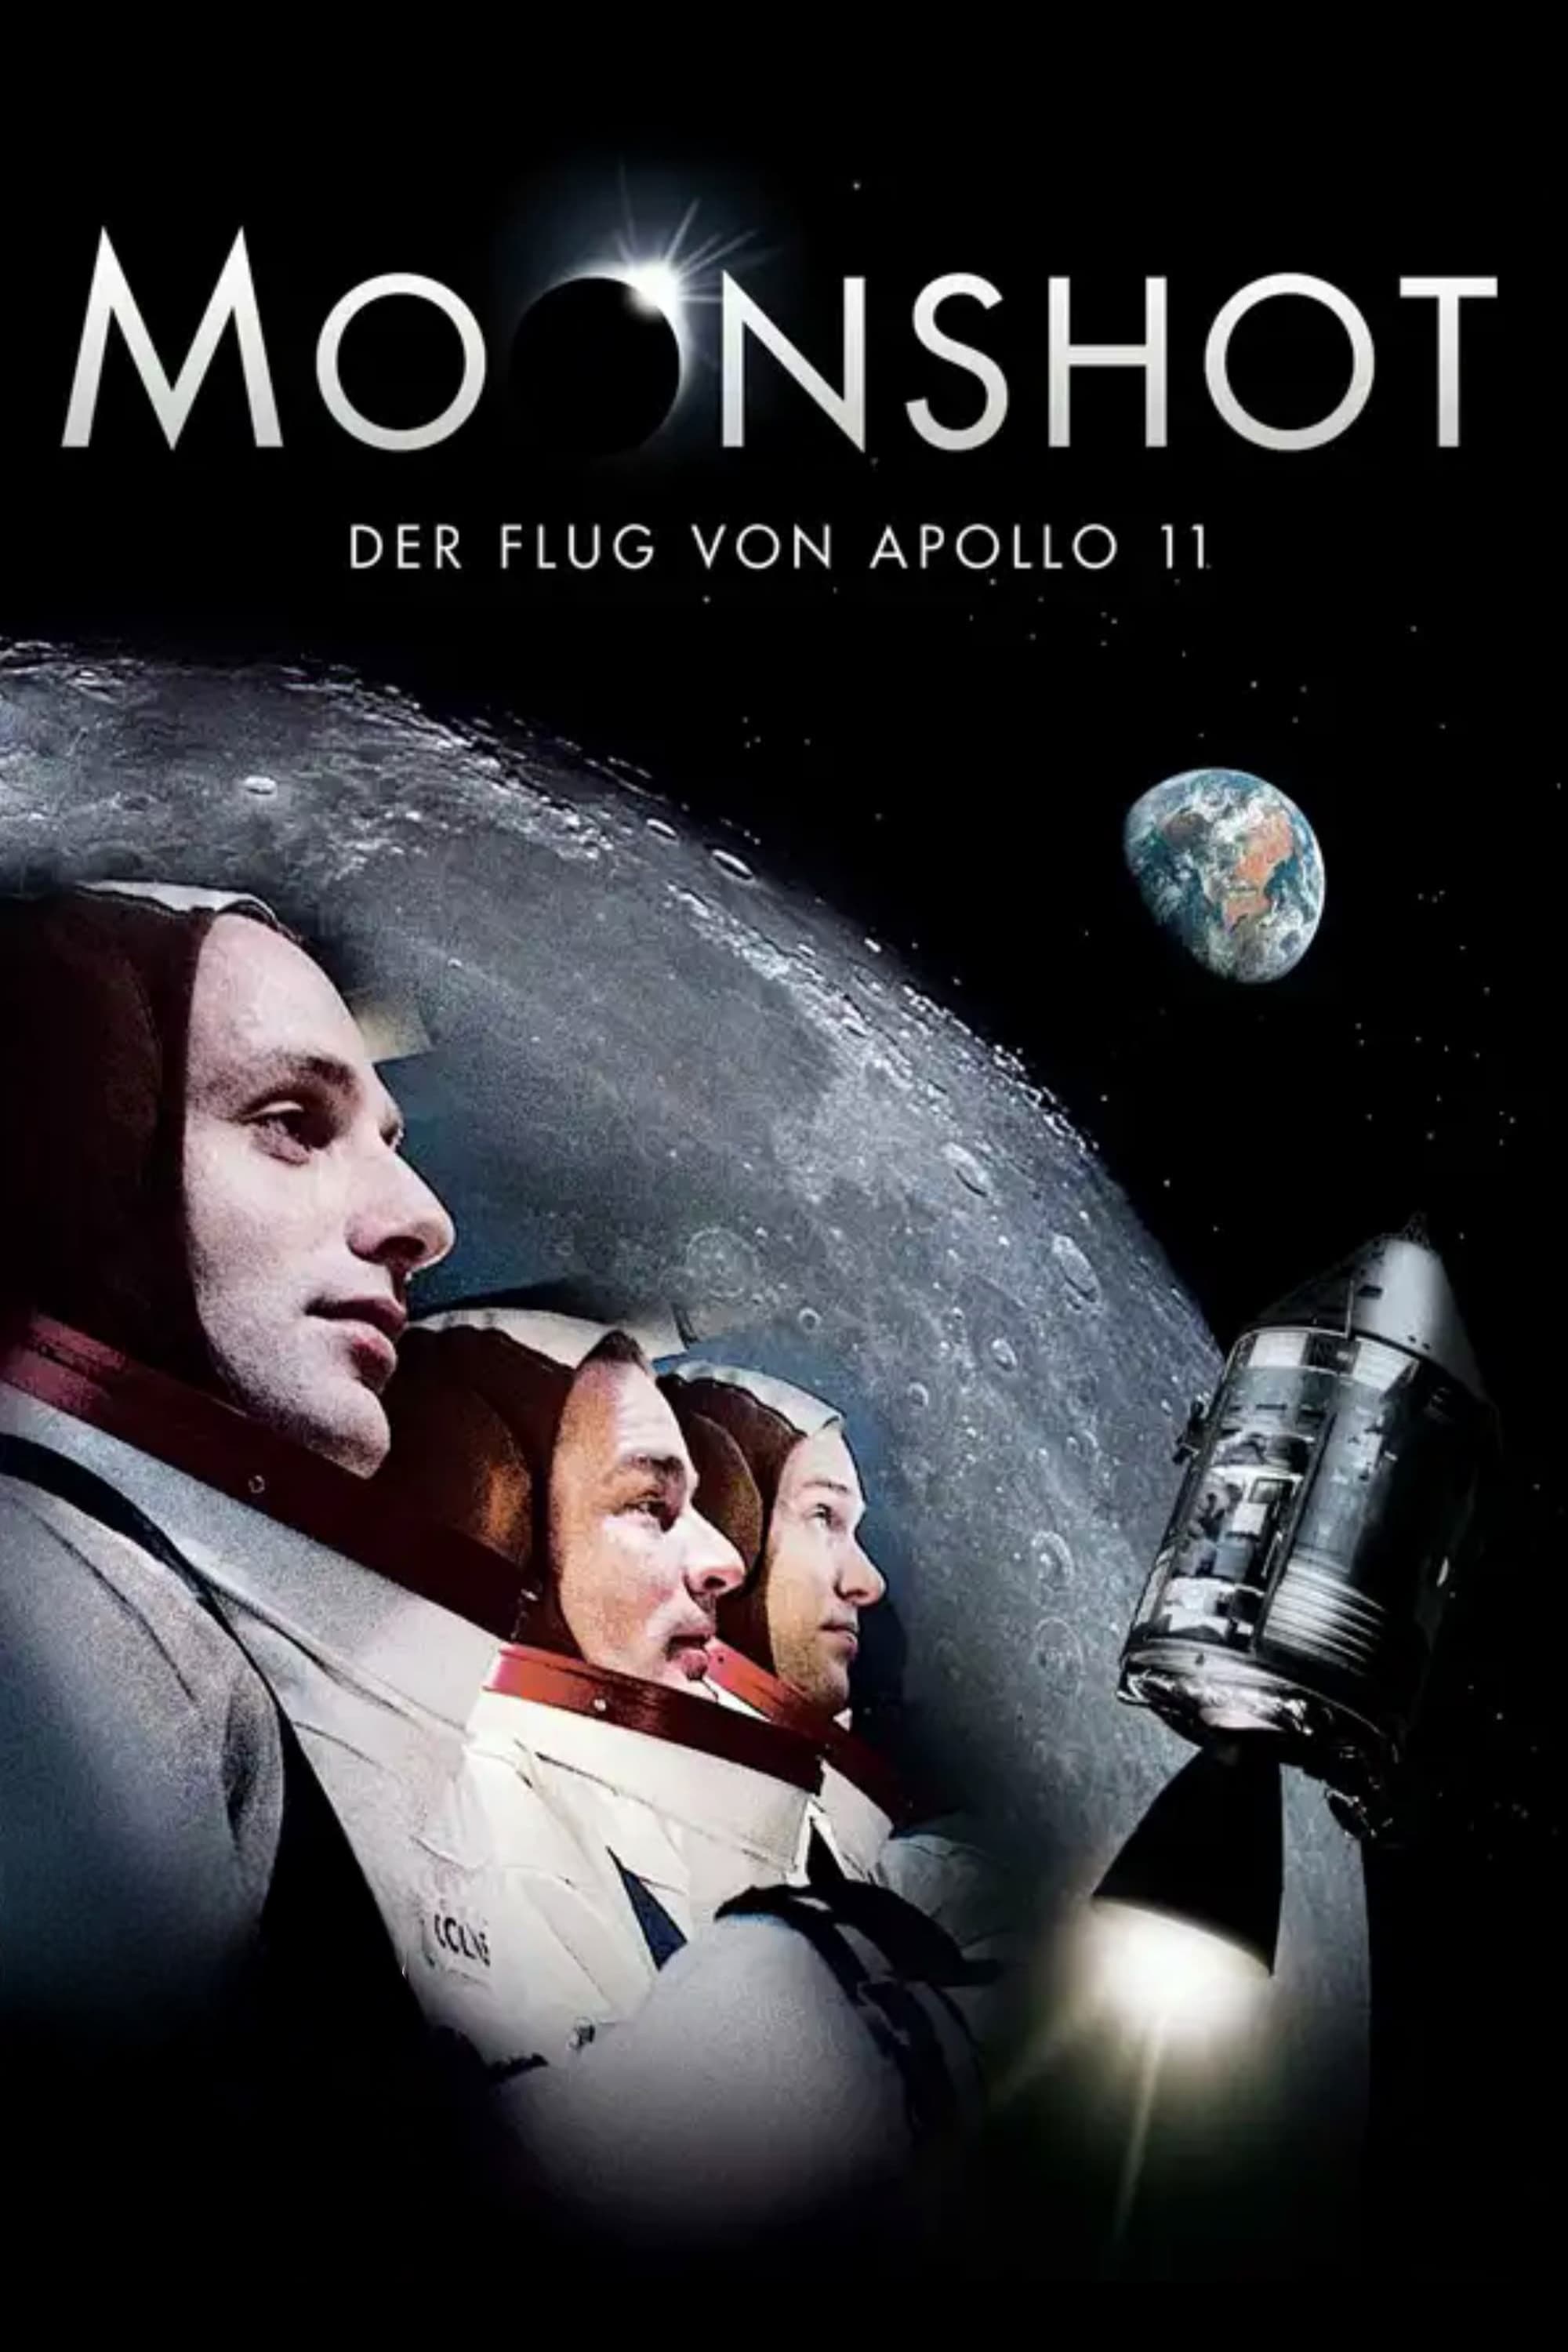 Moonshot - L'uomo sulla luna film